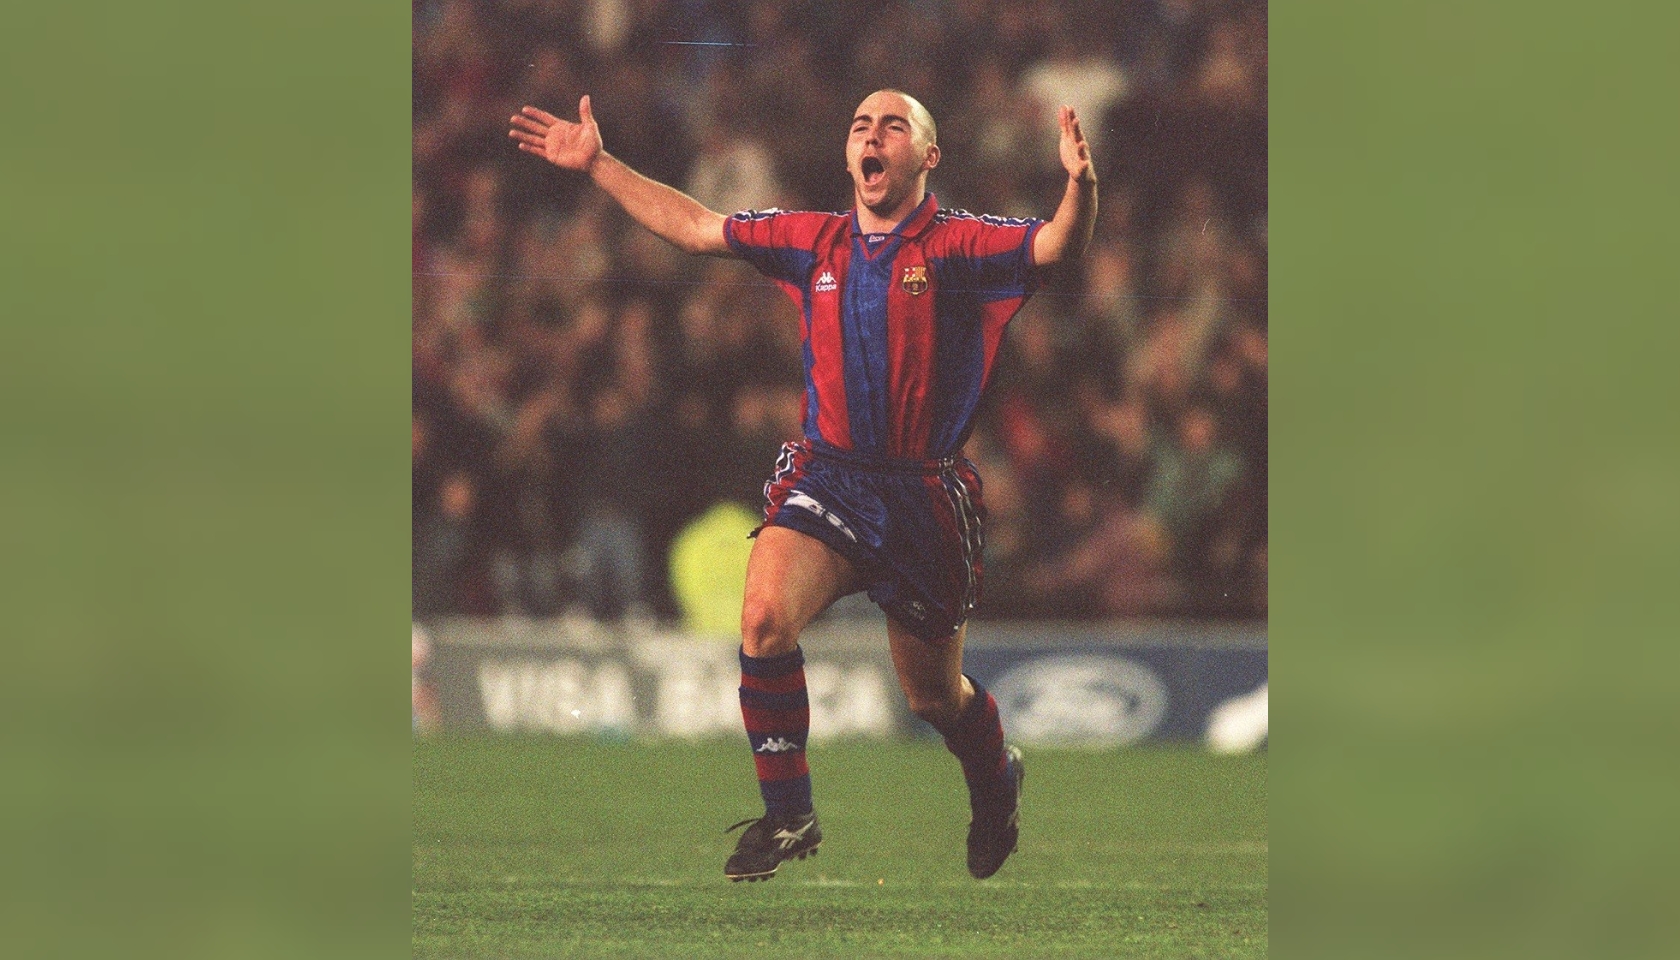 De La Peña's Official Barcelona Signed Shirt, 1997/98 - CharityStars